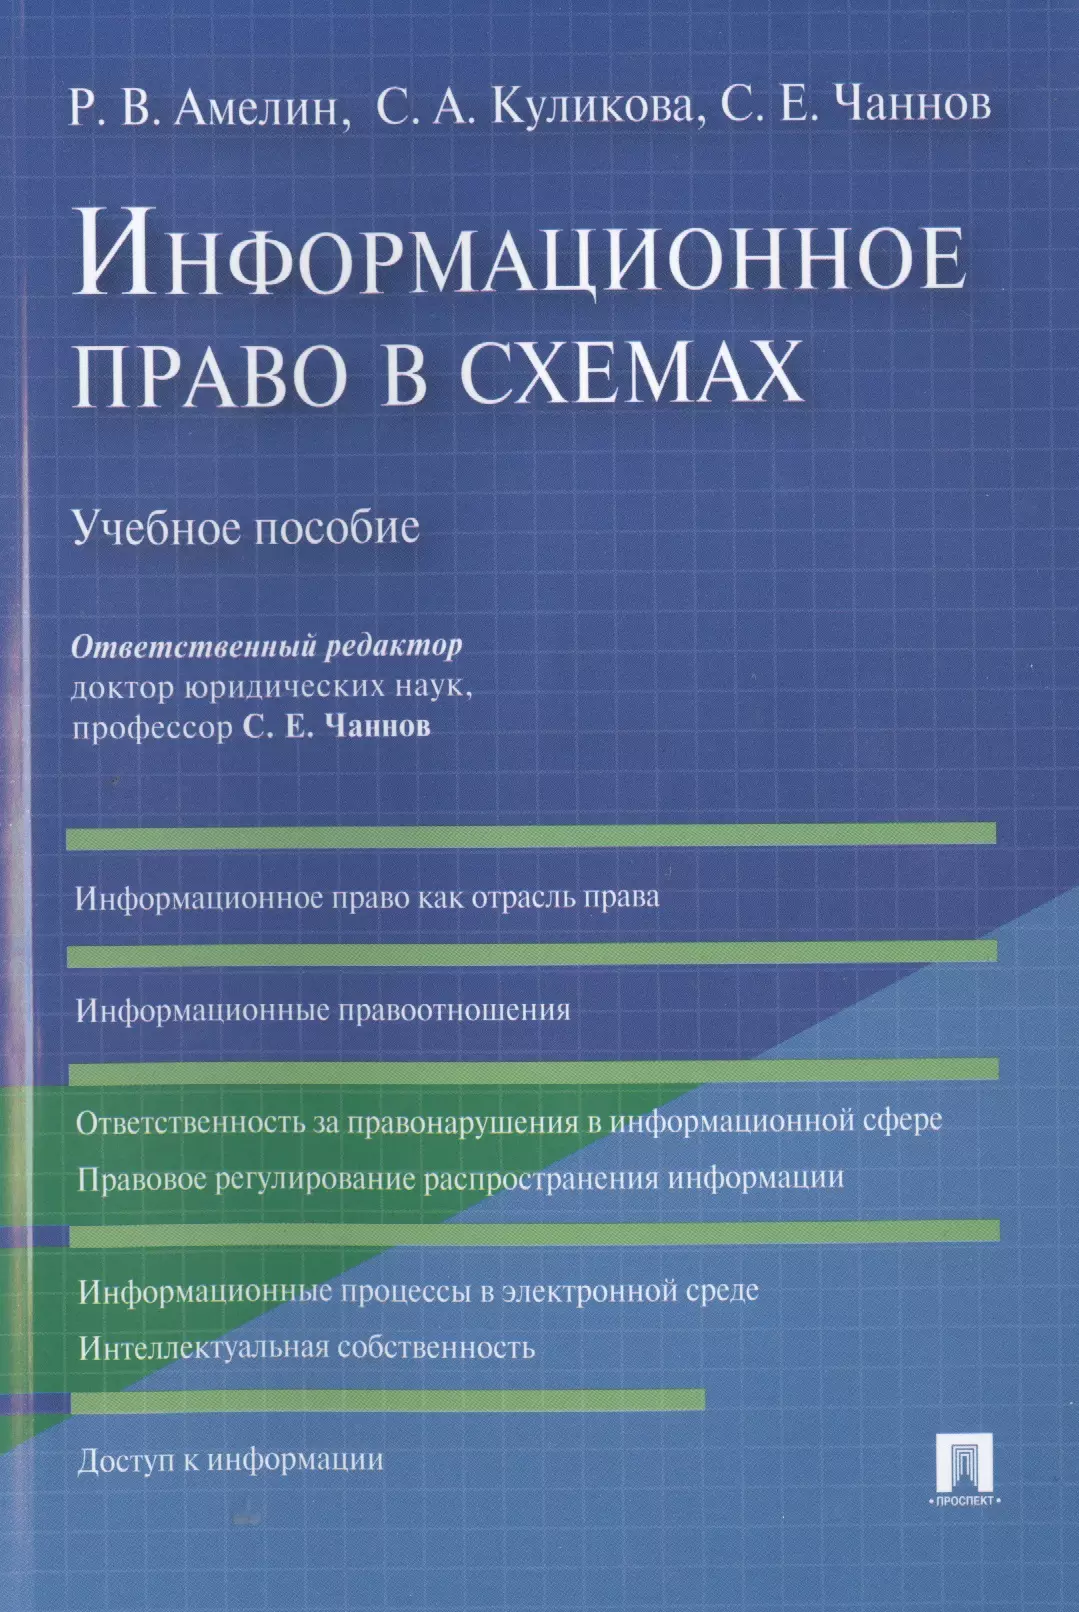 Амелин Роман Владимирович - Информационное право в схемах: учебное пособие